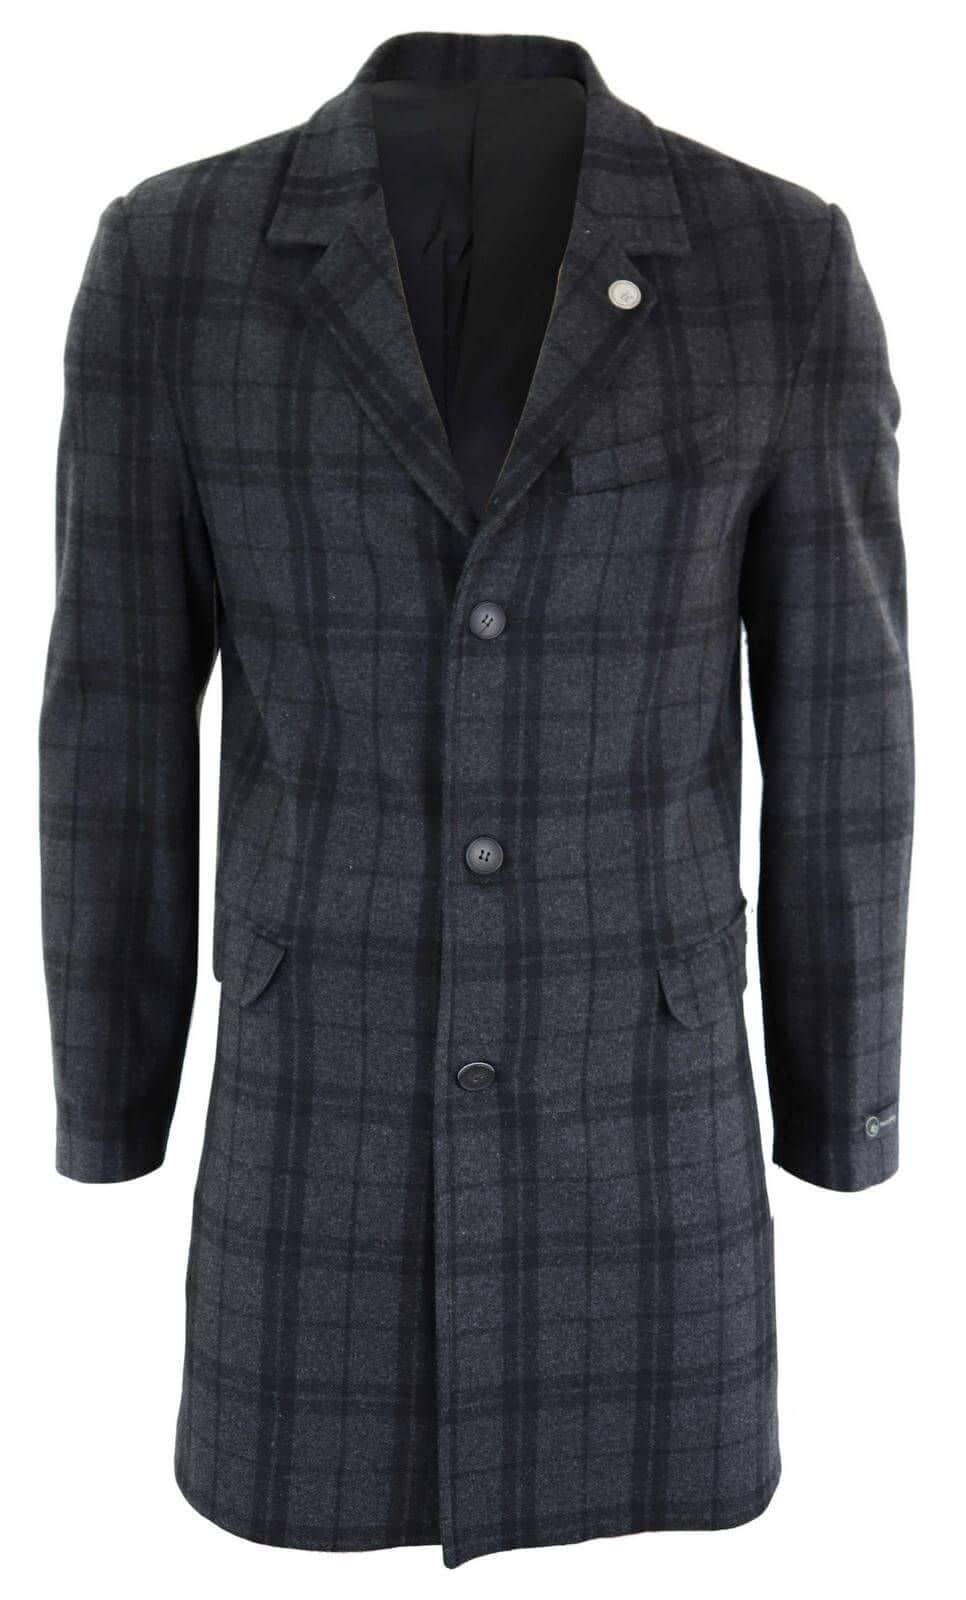 Men's 3/4 Wool Overcoat-Grey: Buy Online - Happy Gentleman